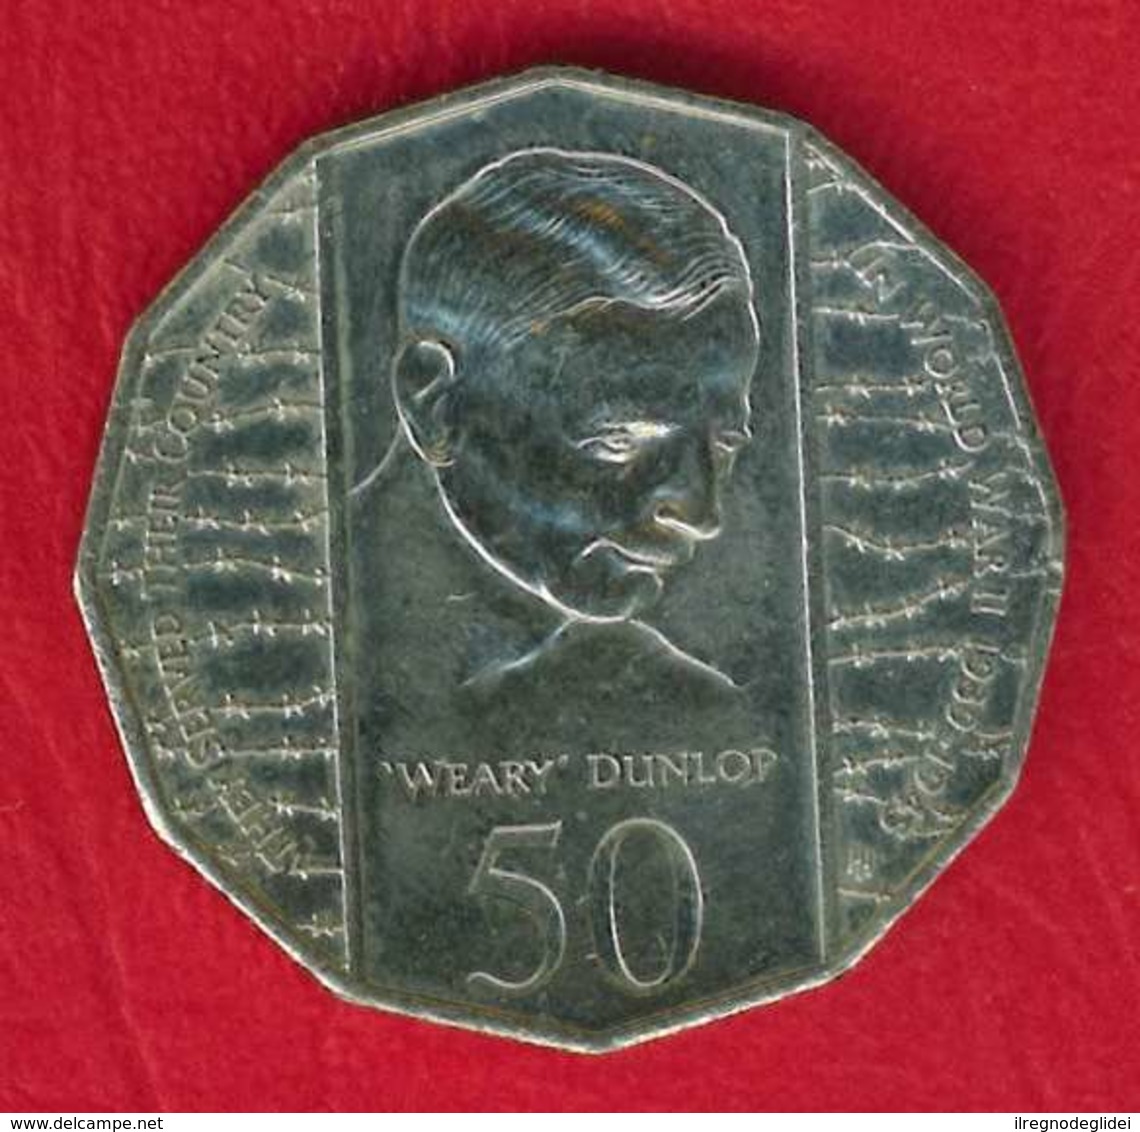 AUSTRALIA - 1995 AUSTRALIAN 50 CENT COIN - WEARY DUNLOP WORLD WAR II - 50 Cents